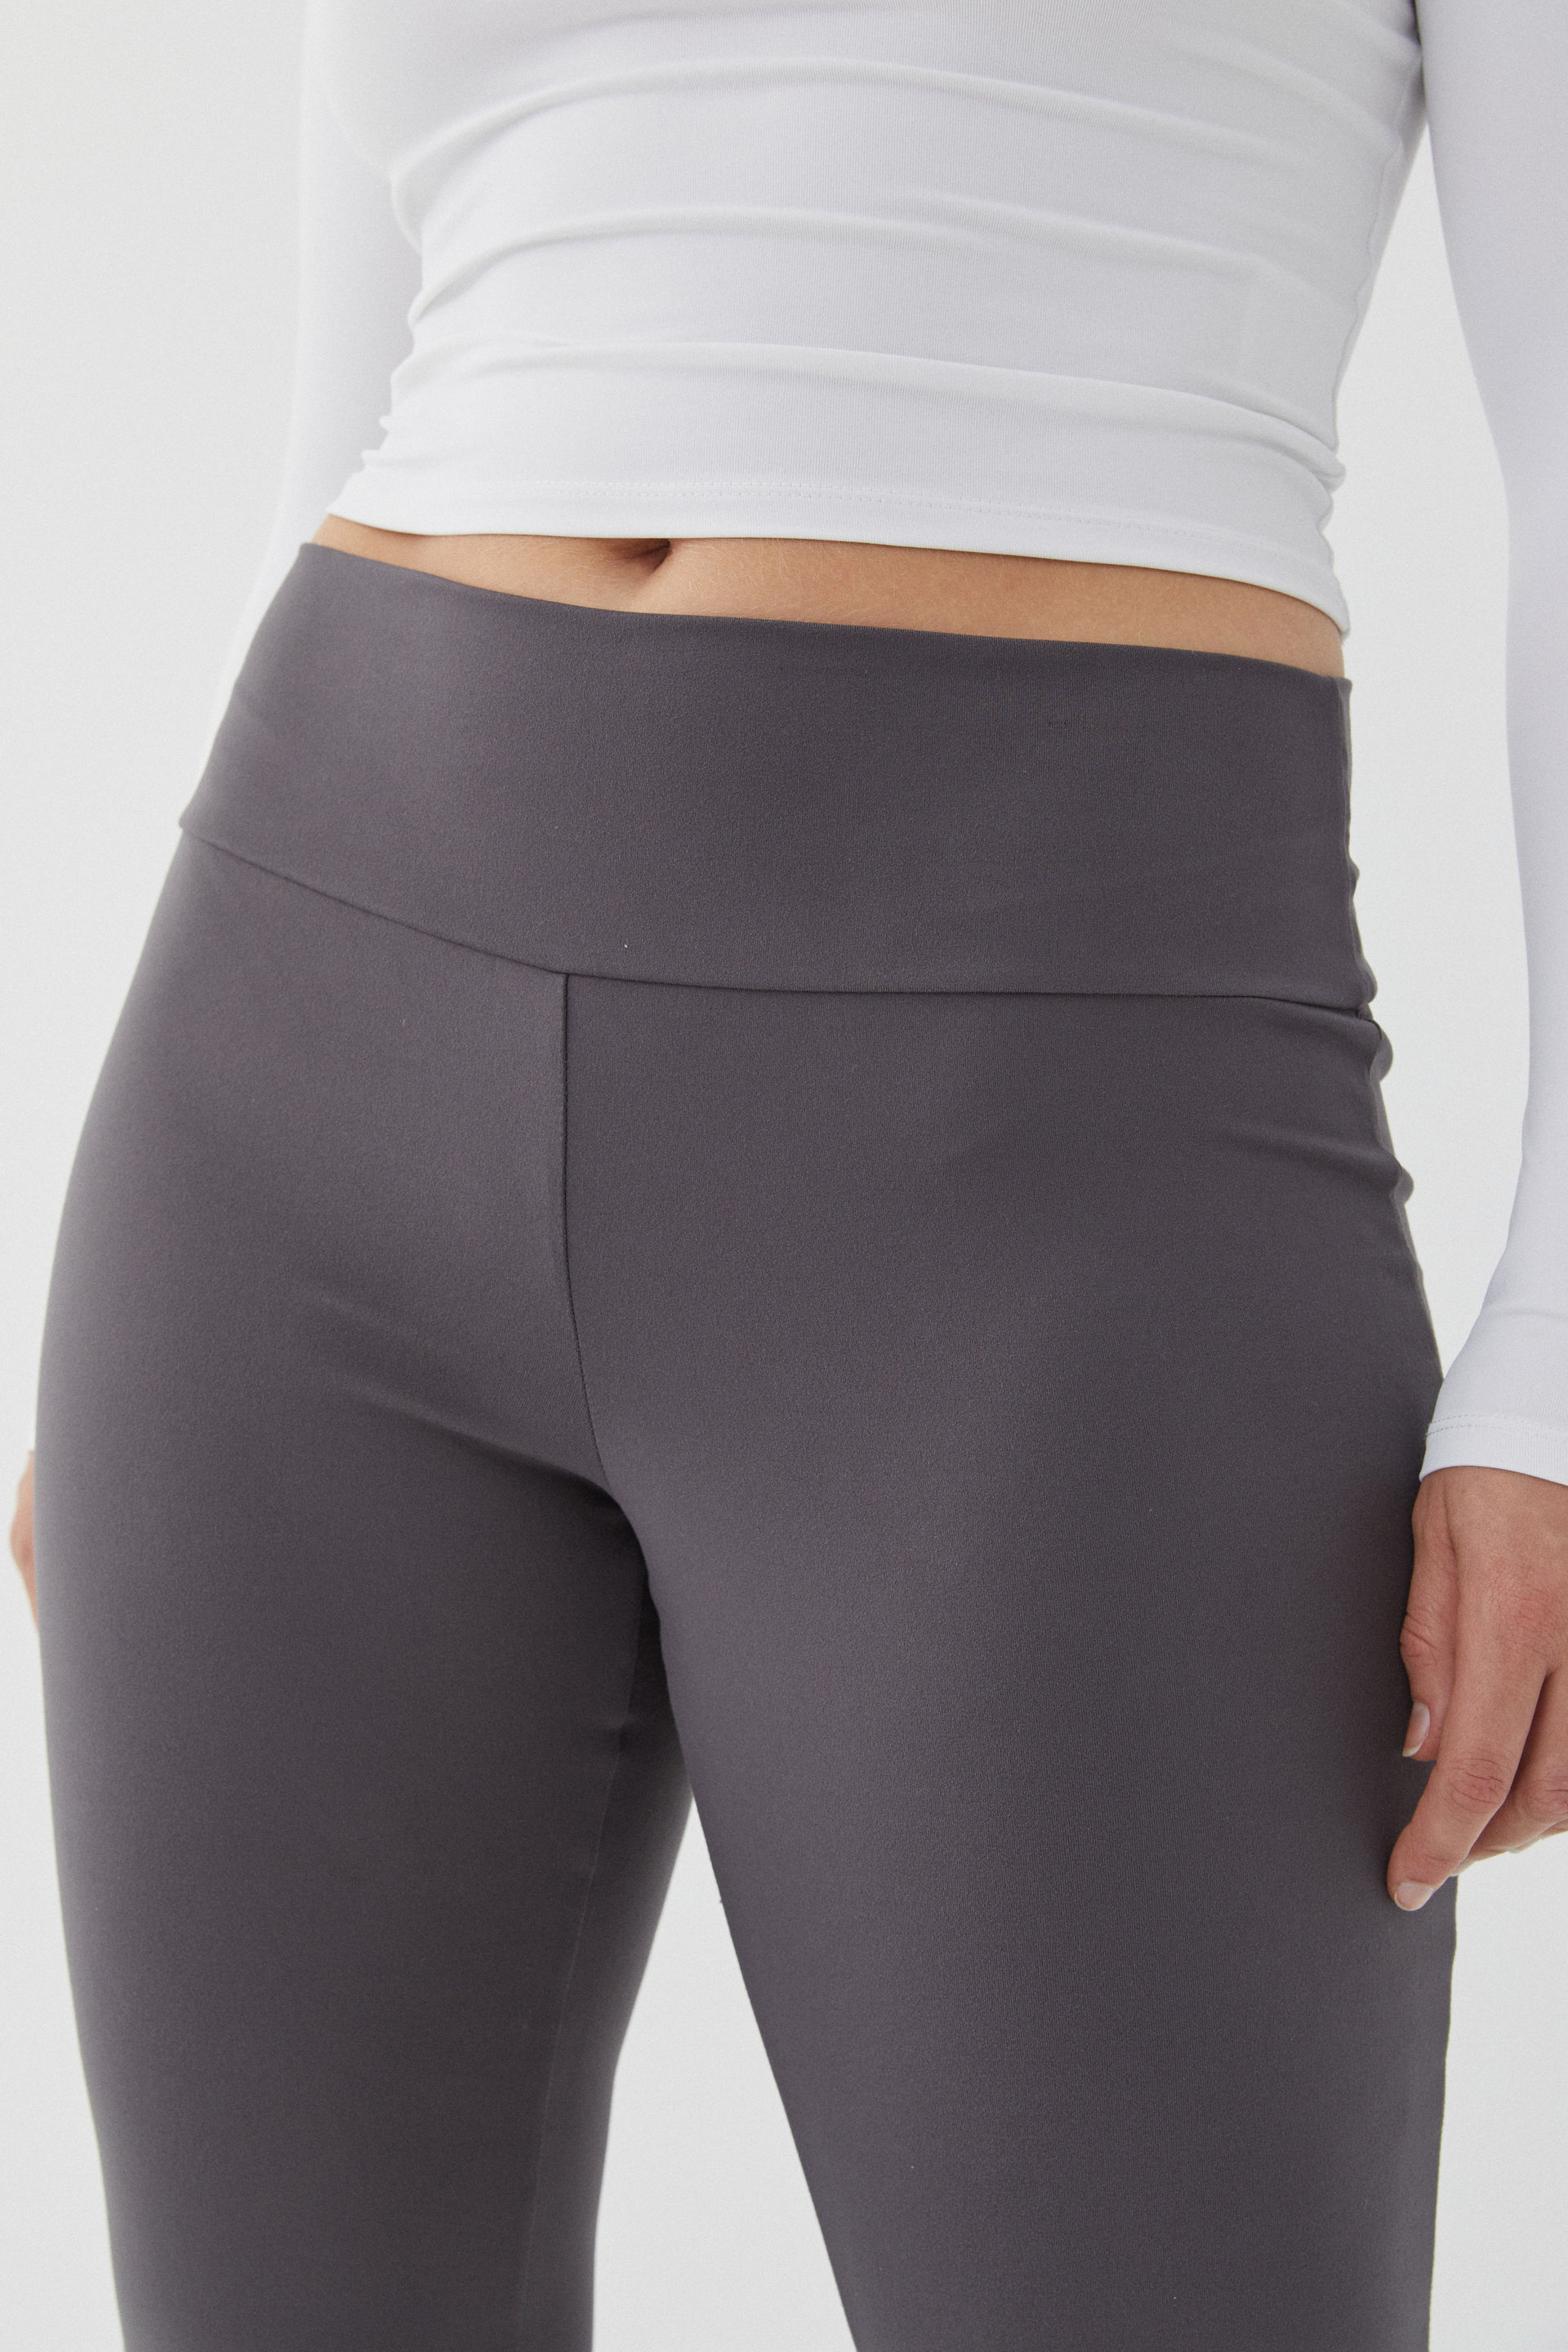 Cotton On, Pants & Jumpsuits, Cottonon Curve Active Ribbed Flare Pants  Lilac Purple Size 22 Nwt